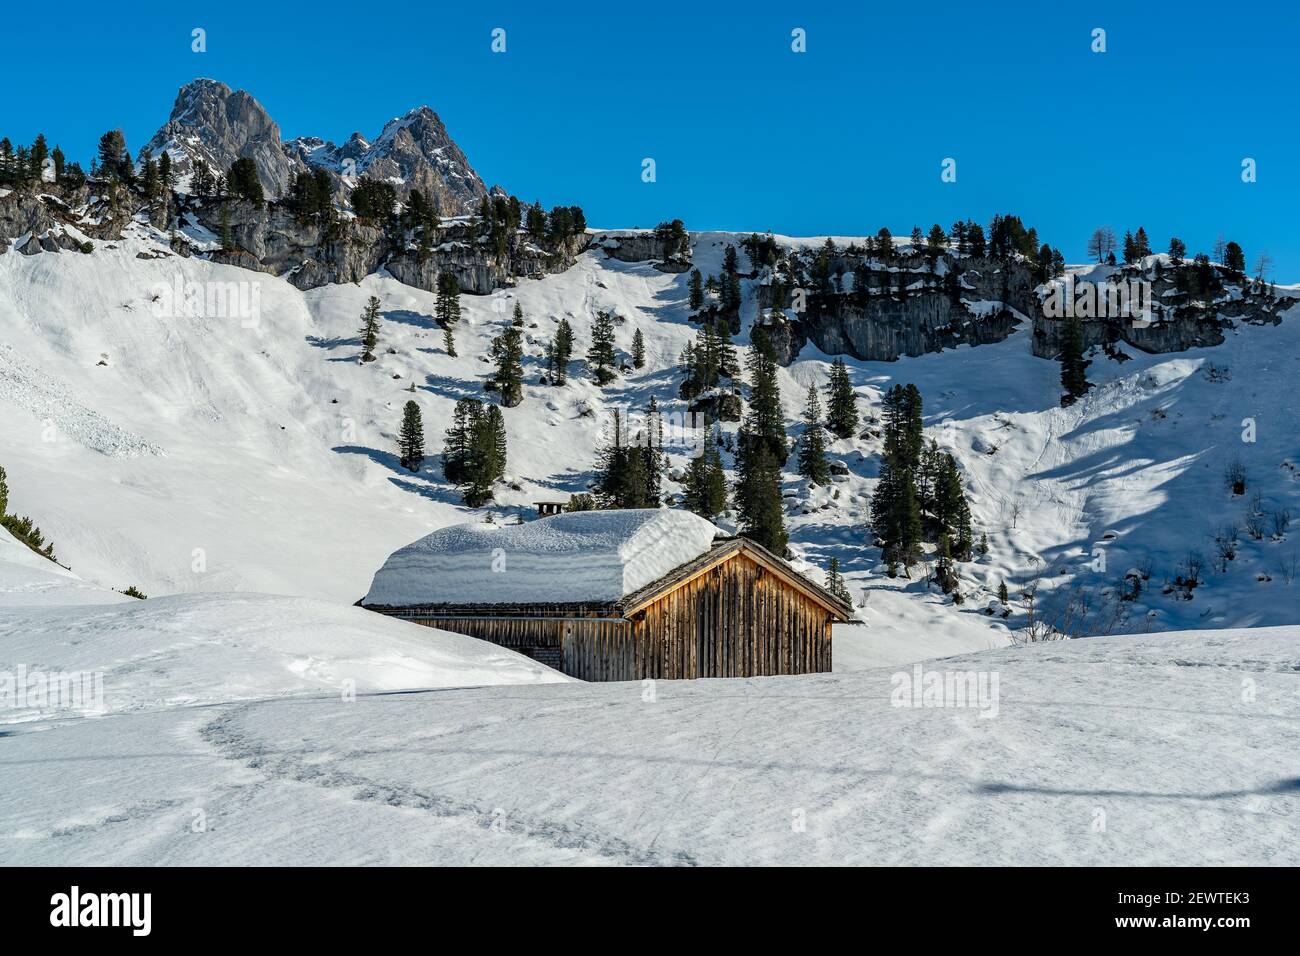 Montagne innevate con capanna alpina, Geschindelte Hütte, Skigebiet Saloberkopf mit dem Karhorn im Hintergrund. Sport invernale am Körbersee, Austria Foto Stock